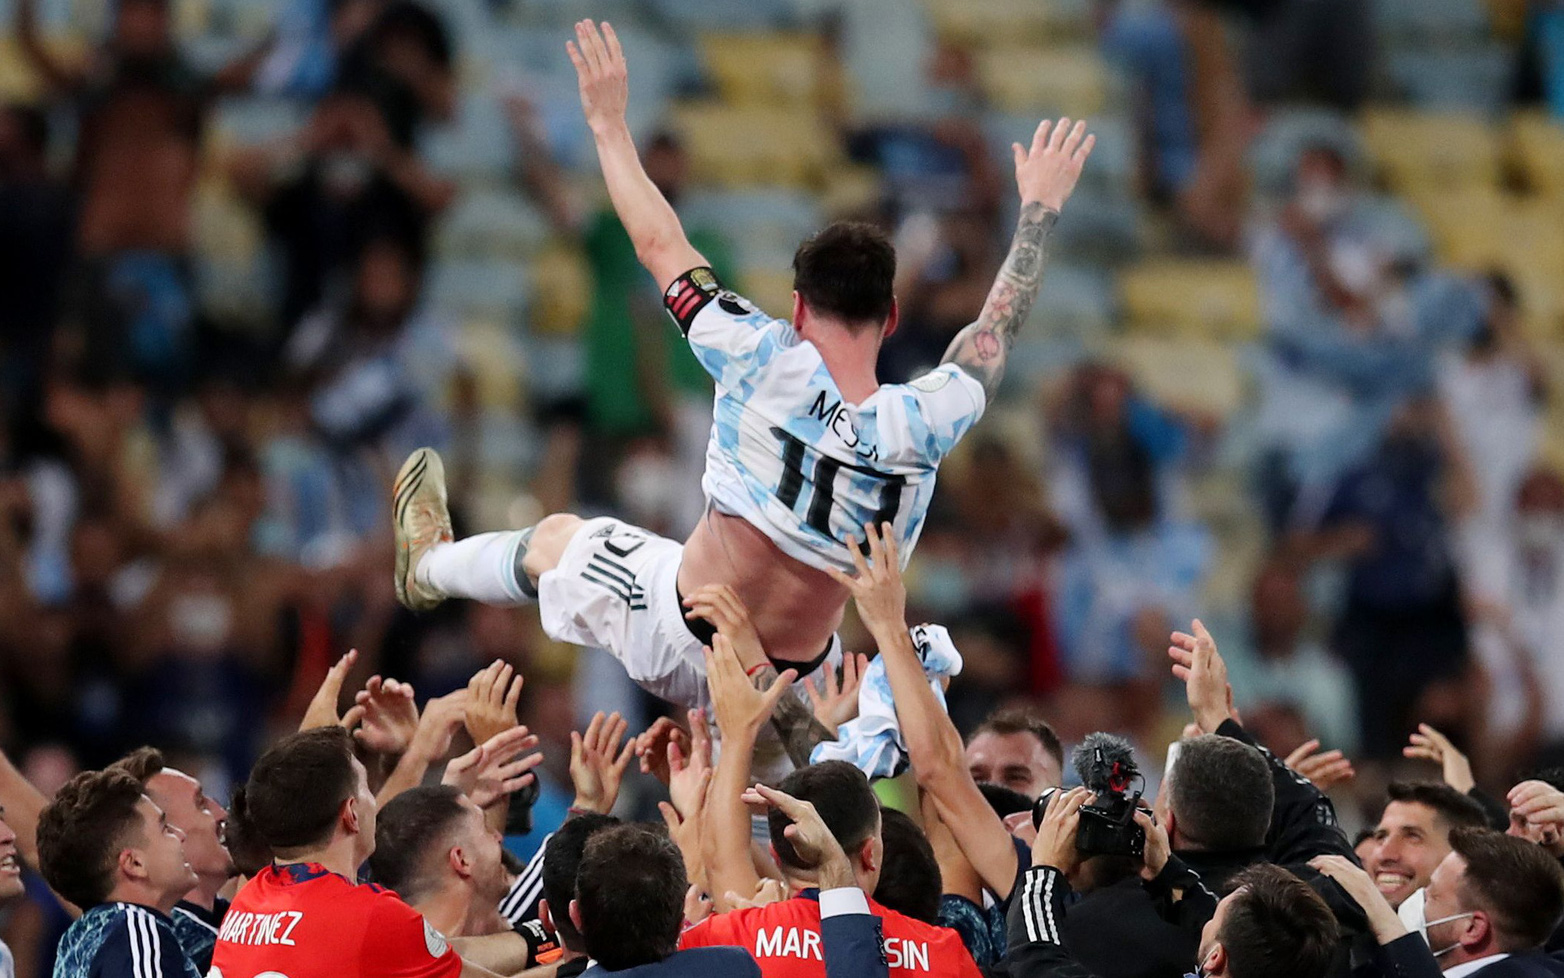 Giải tỏa cơn khát vô địch cùng Argentina, Messi được đồng đội công kênh - Ảnh 7.